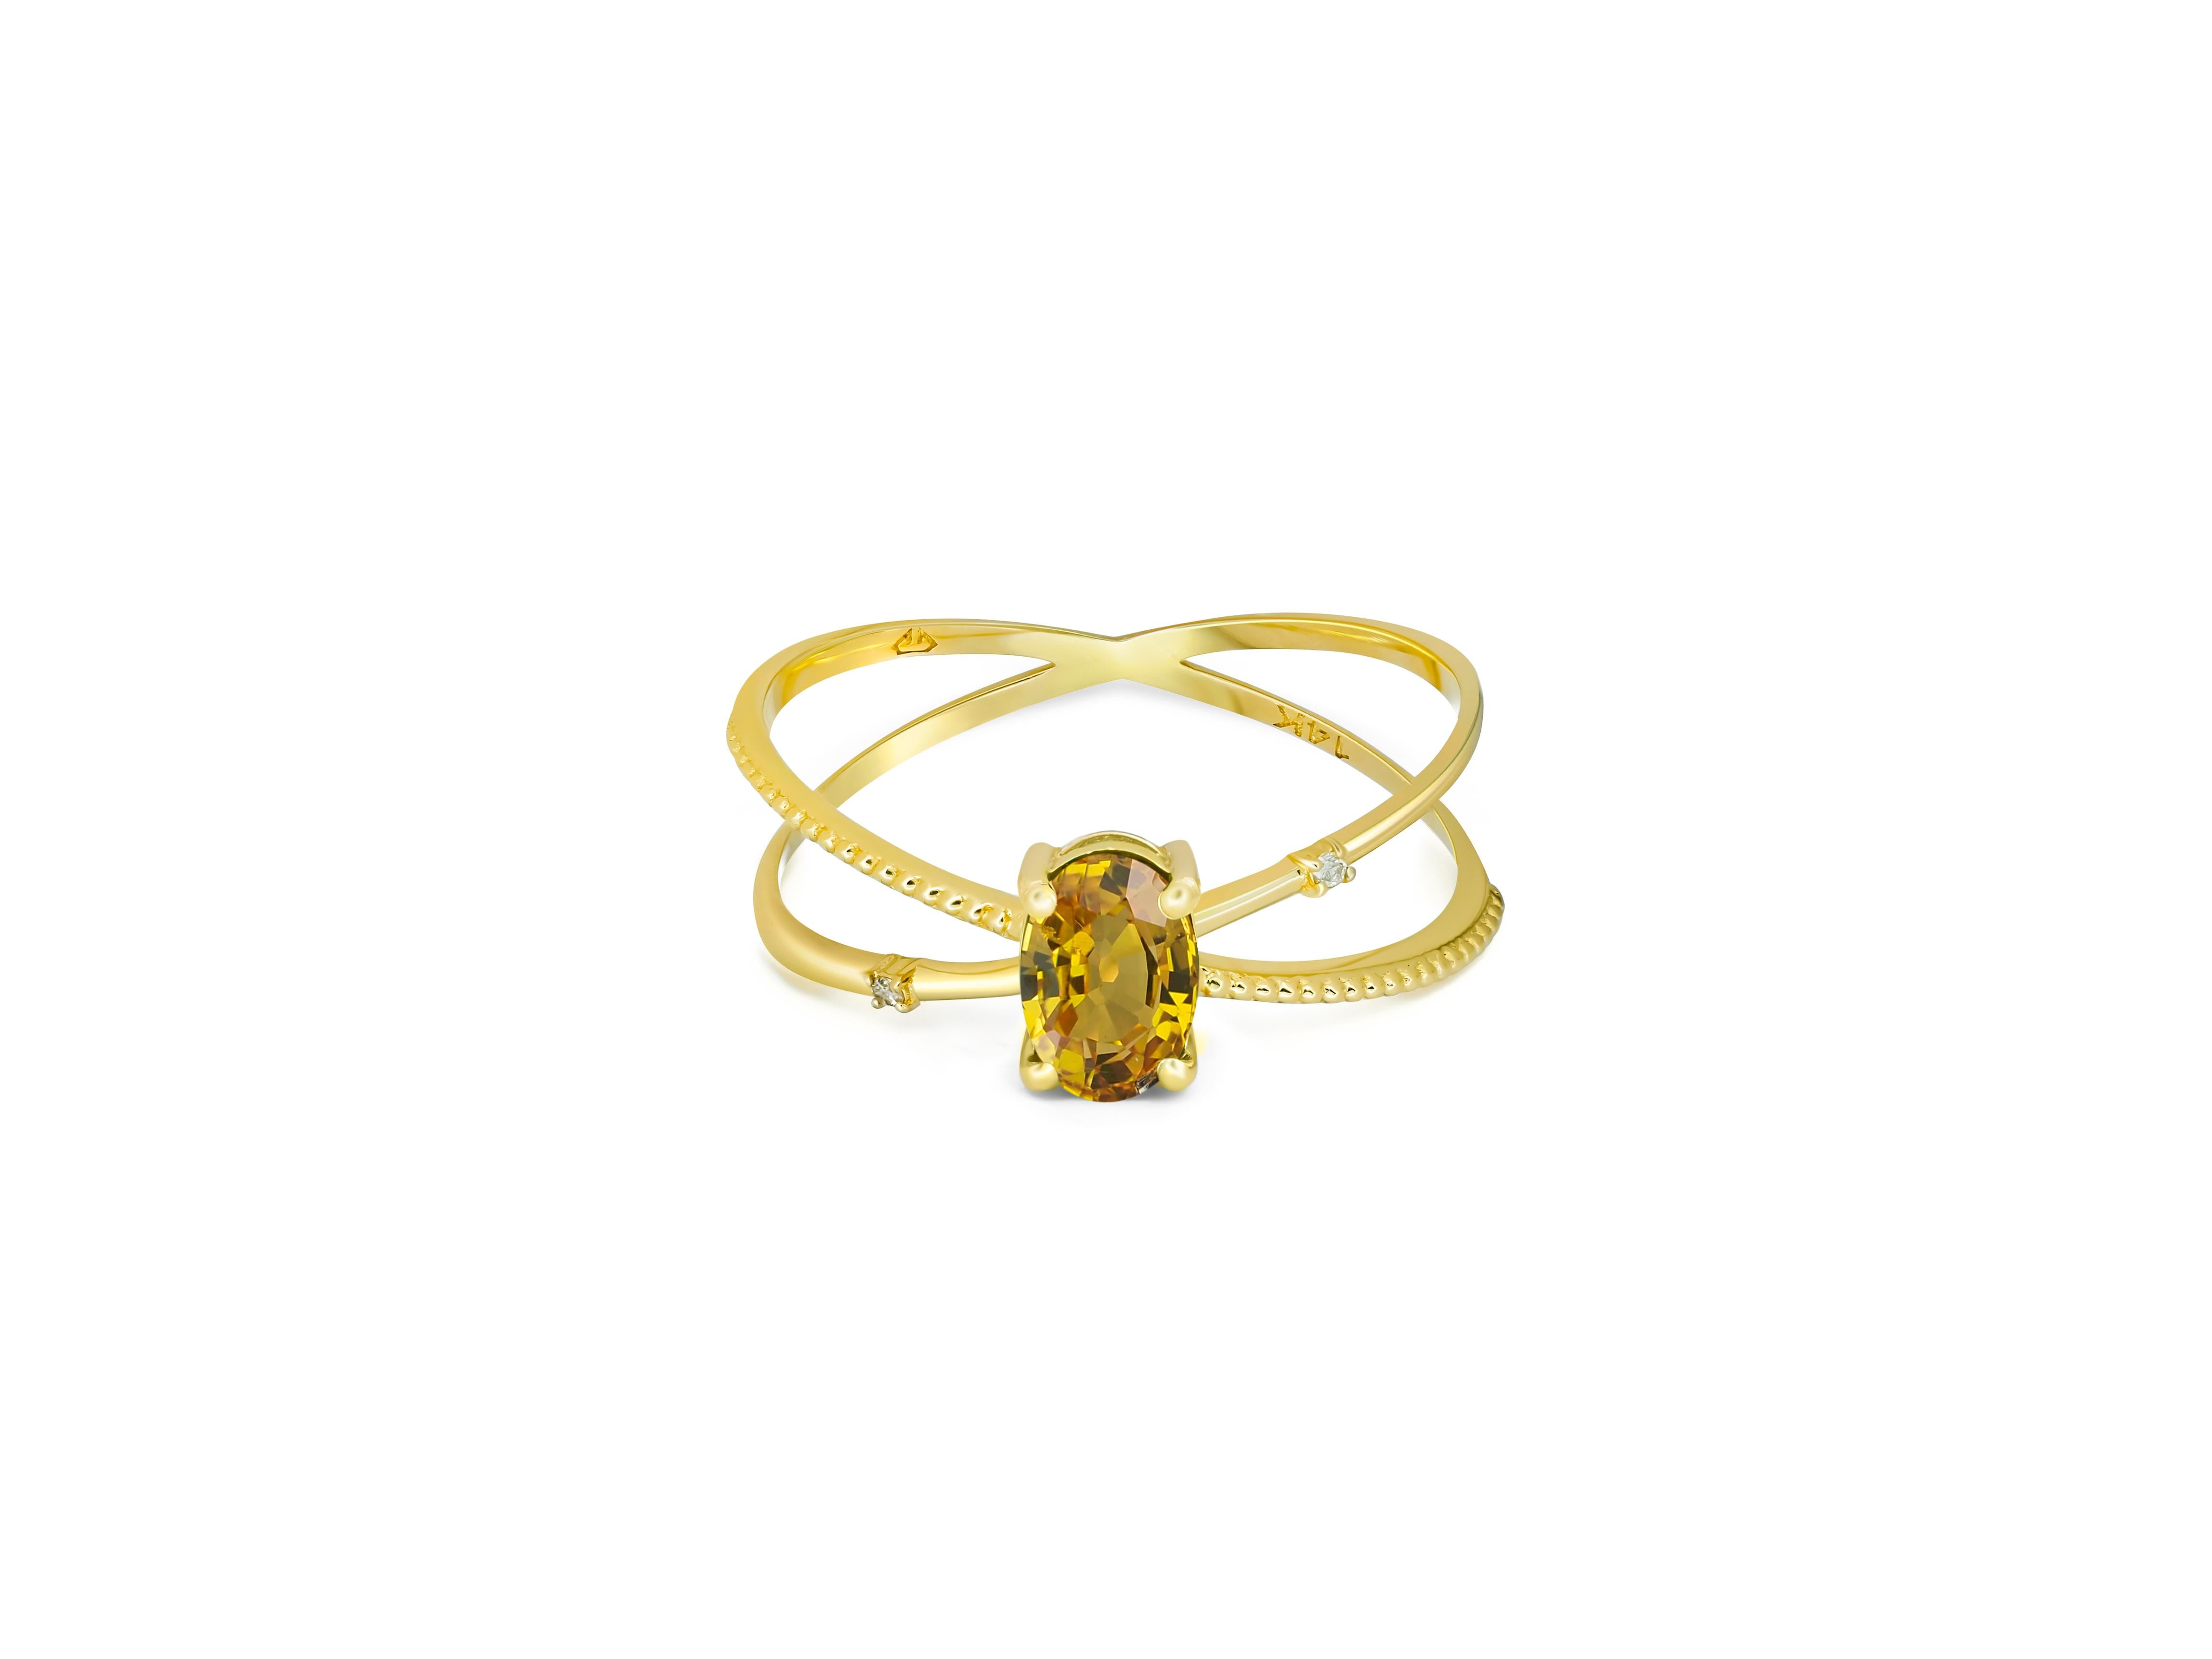 Spiralförmiger Ring aus Saphir. 
Ovaler Saphir-Ring. Saphir Goldring. 14k Goldring mit Saphir. Minimalistischer Saphir-Ring.

Metall: 14k Gold
Gewicht: 1,9 g  hängt von der Größe ab.
 
Hauptstein: Saphir
Die Form: Oval  
Gesamtkaratgewicht: ca. 1